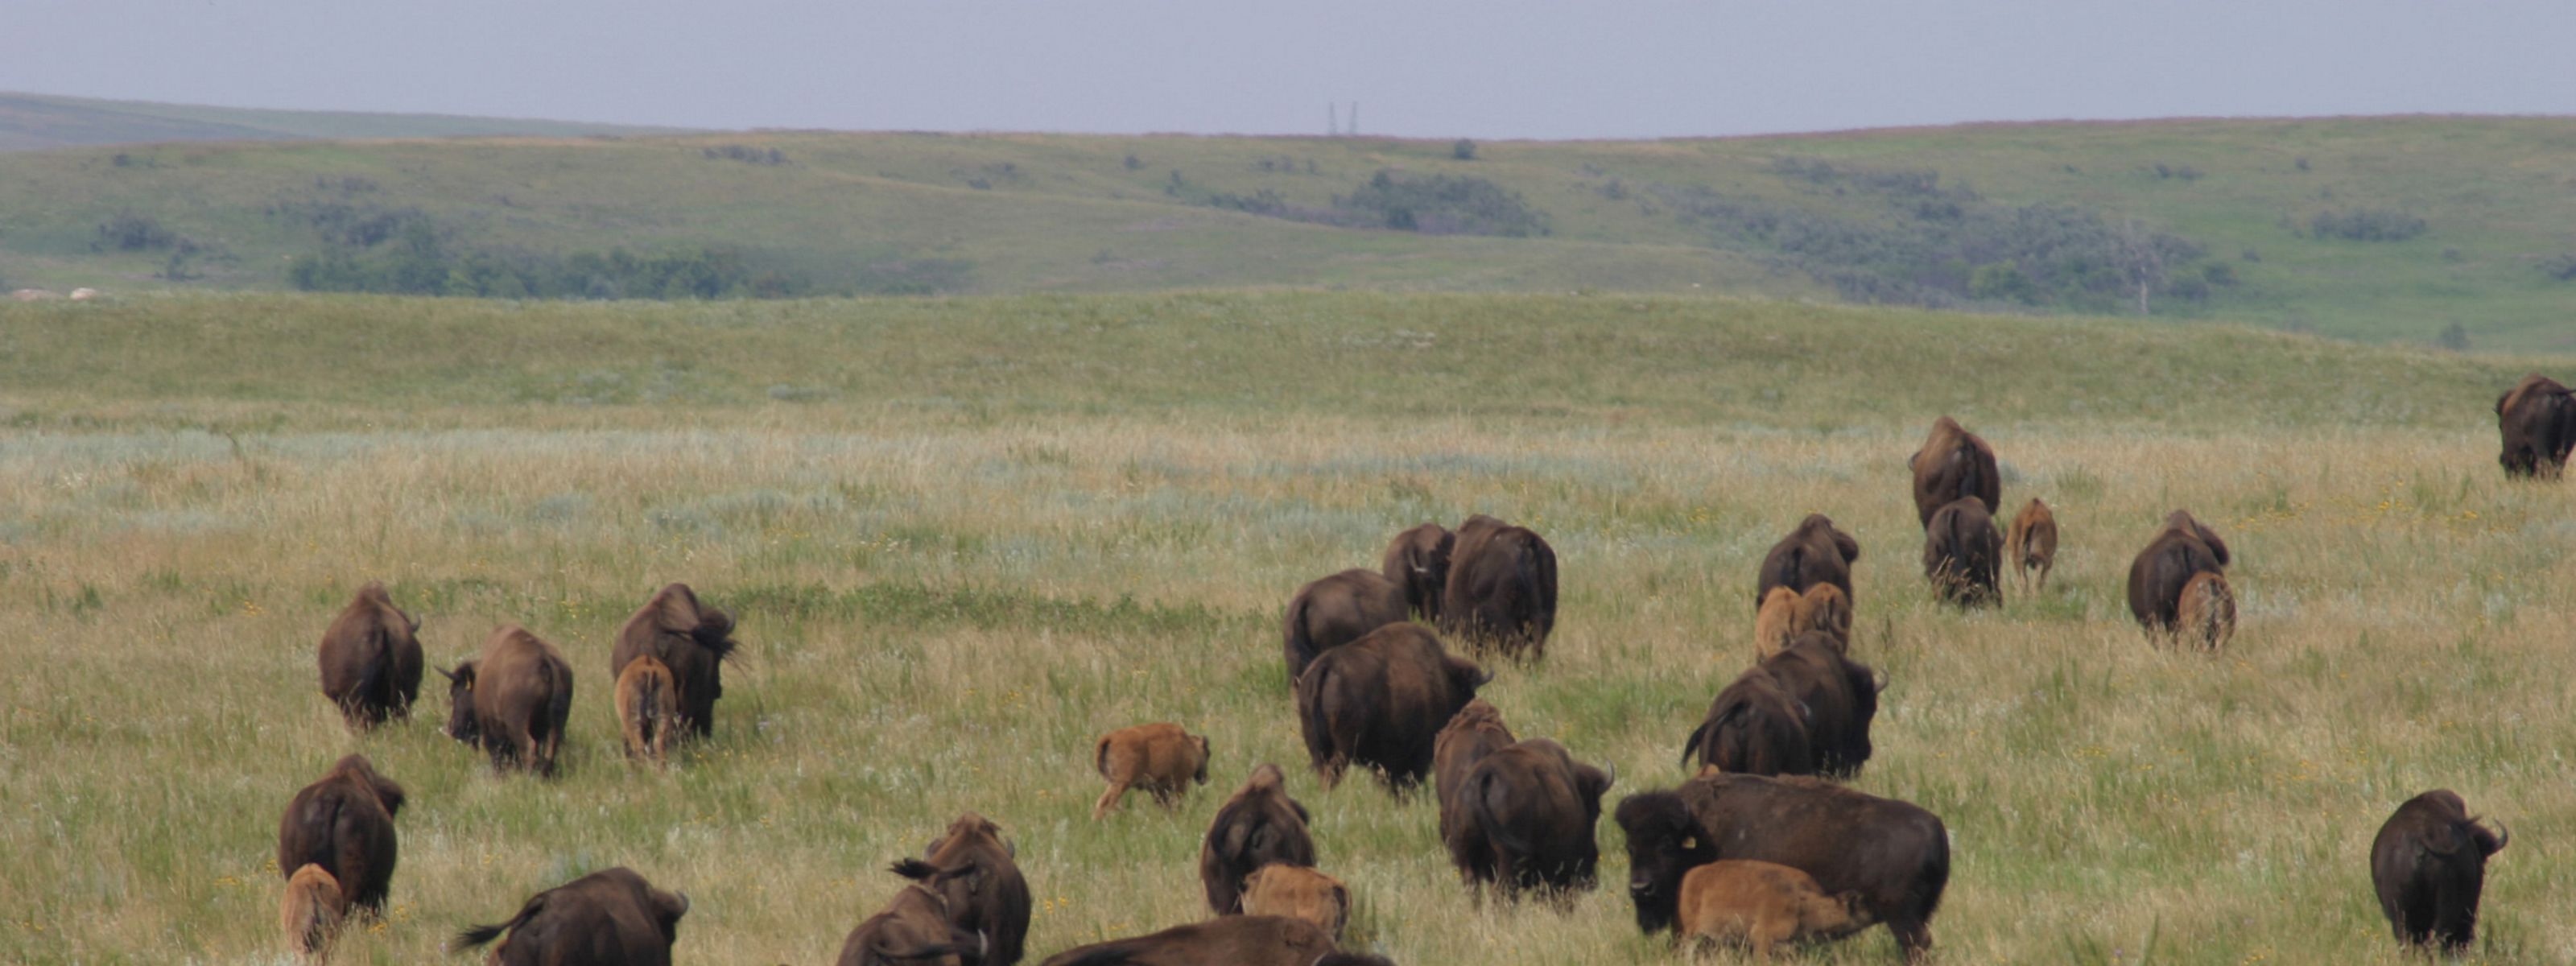 Bison on a grassland.